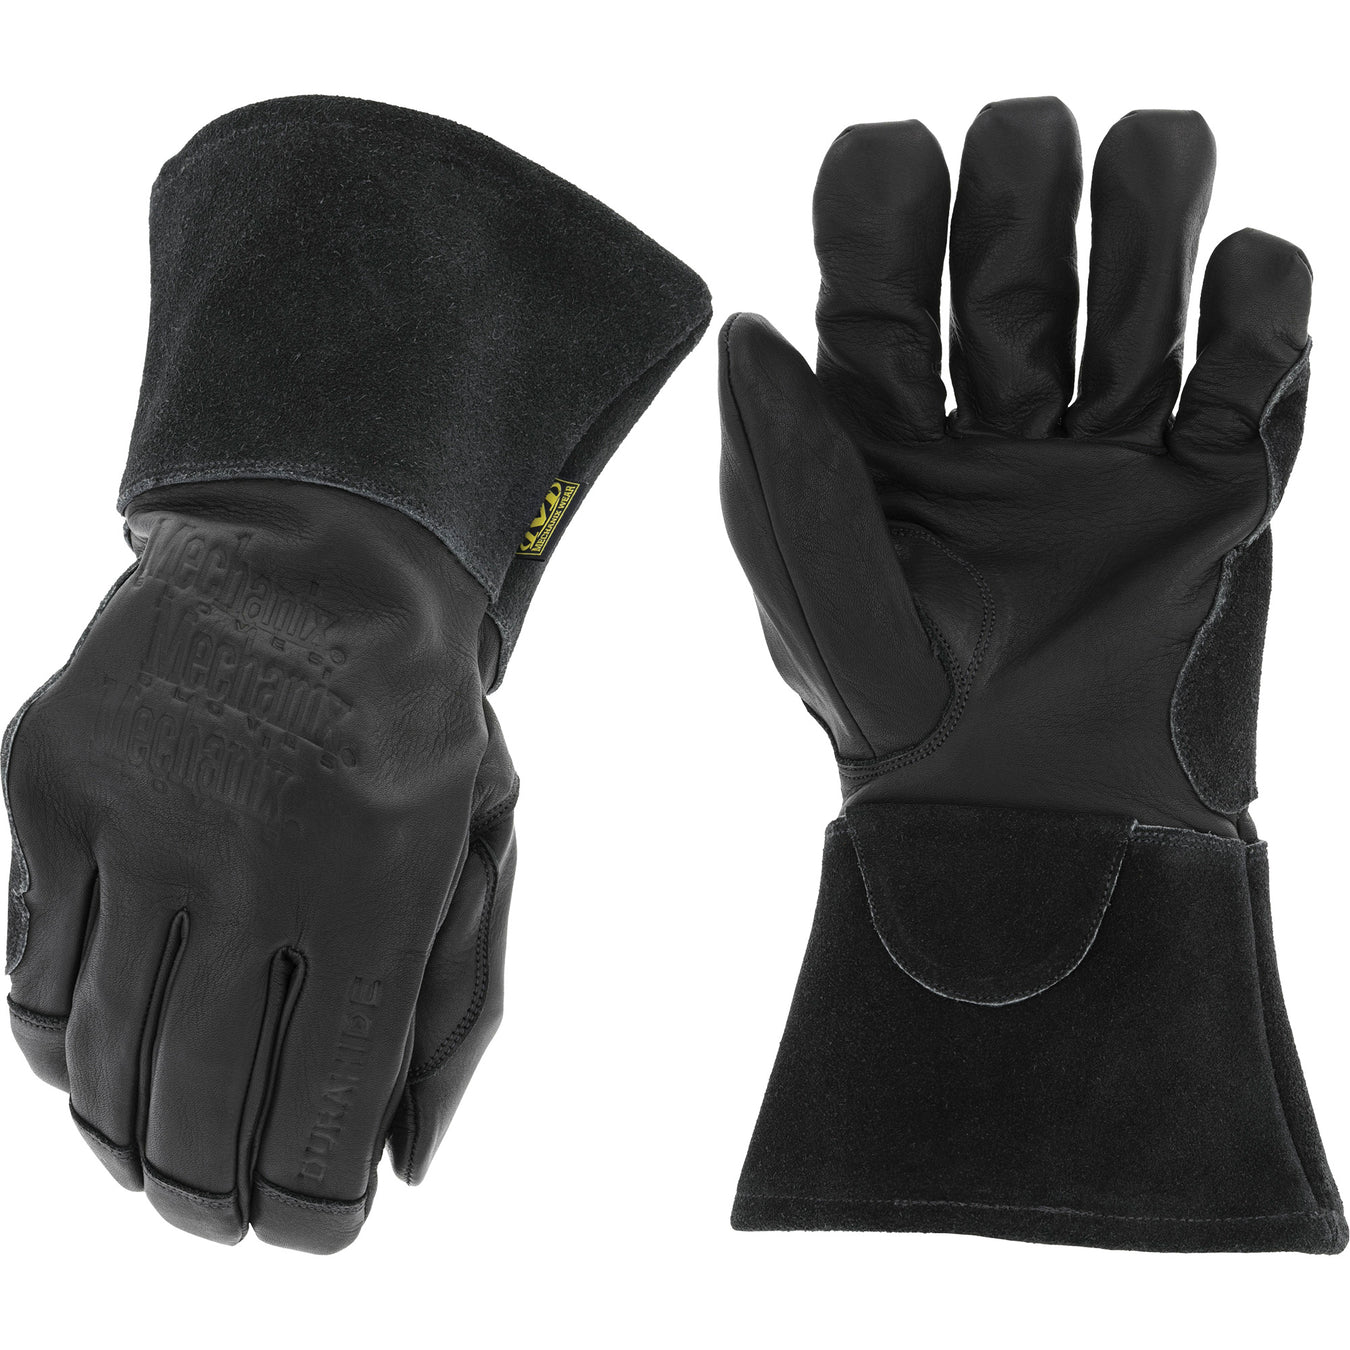 Cascade-Torch Welding Gloves